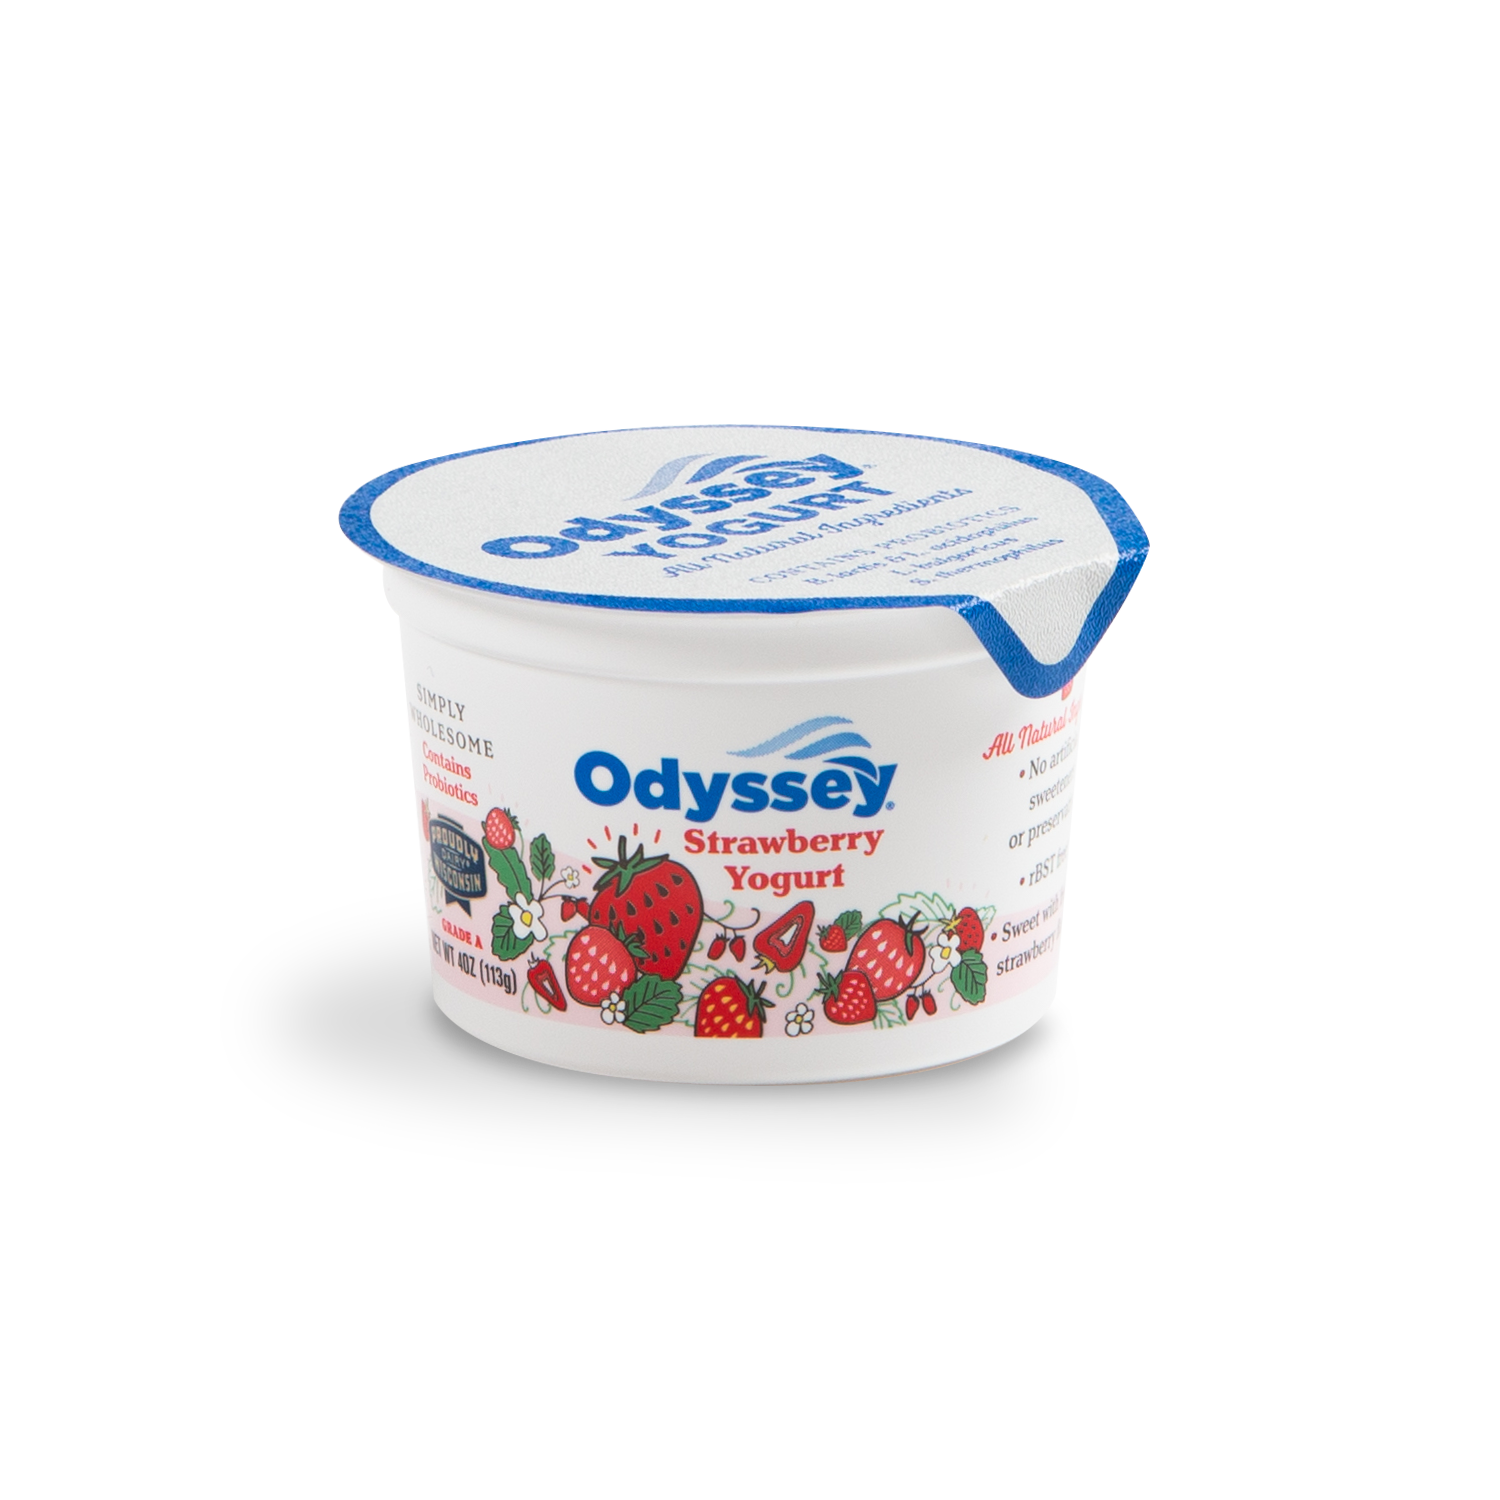 Odyssey Brands Products Strawberry Greek Yogurt 4 oz no Fruit